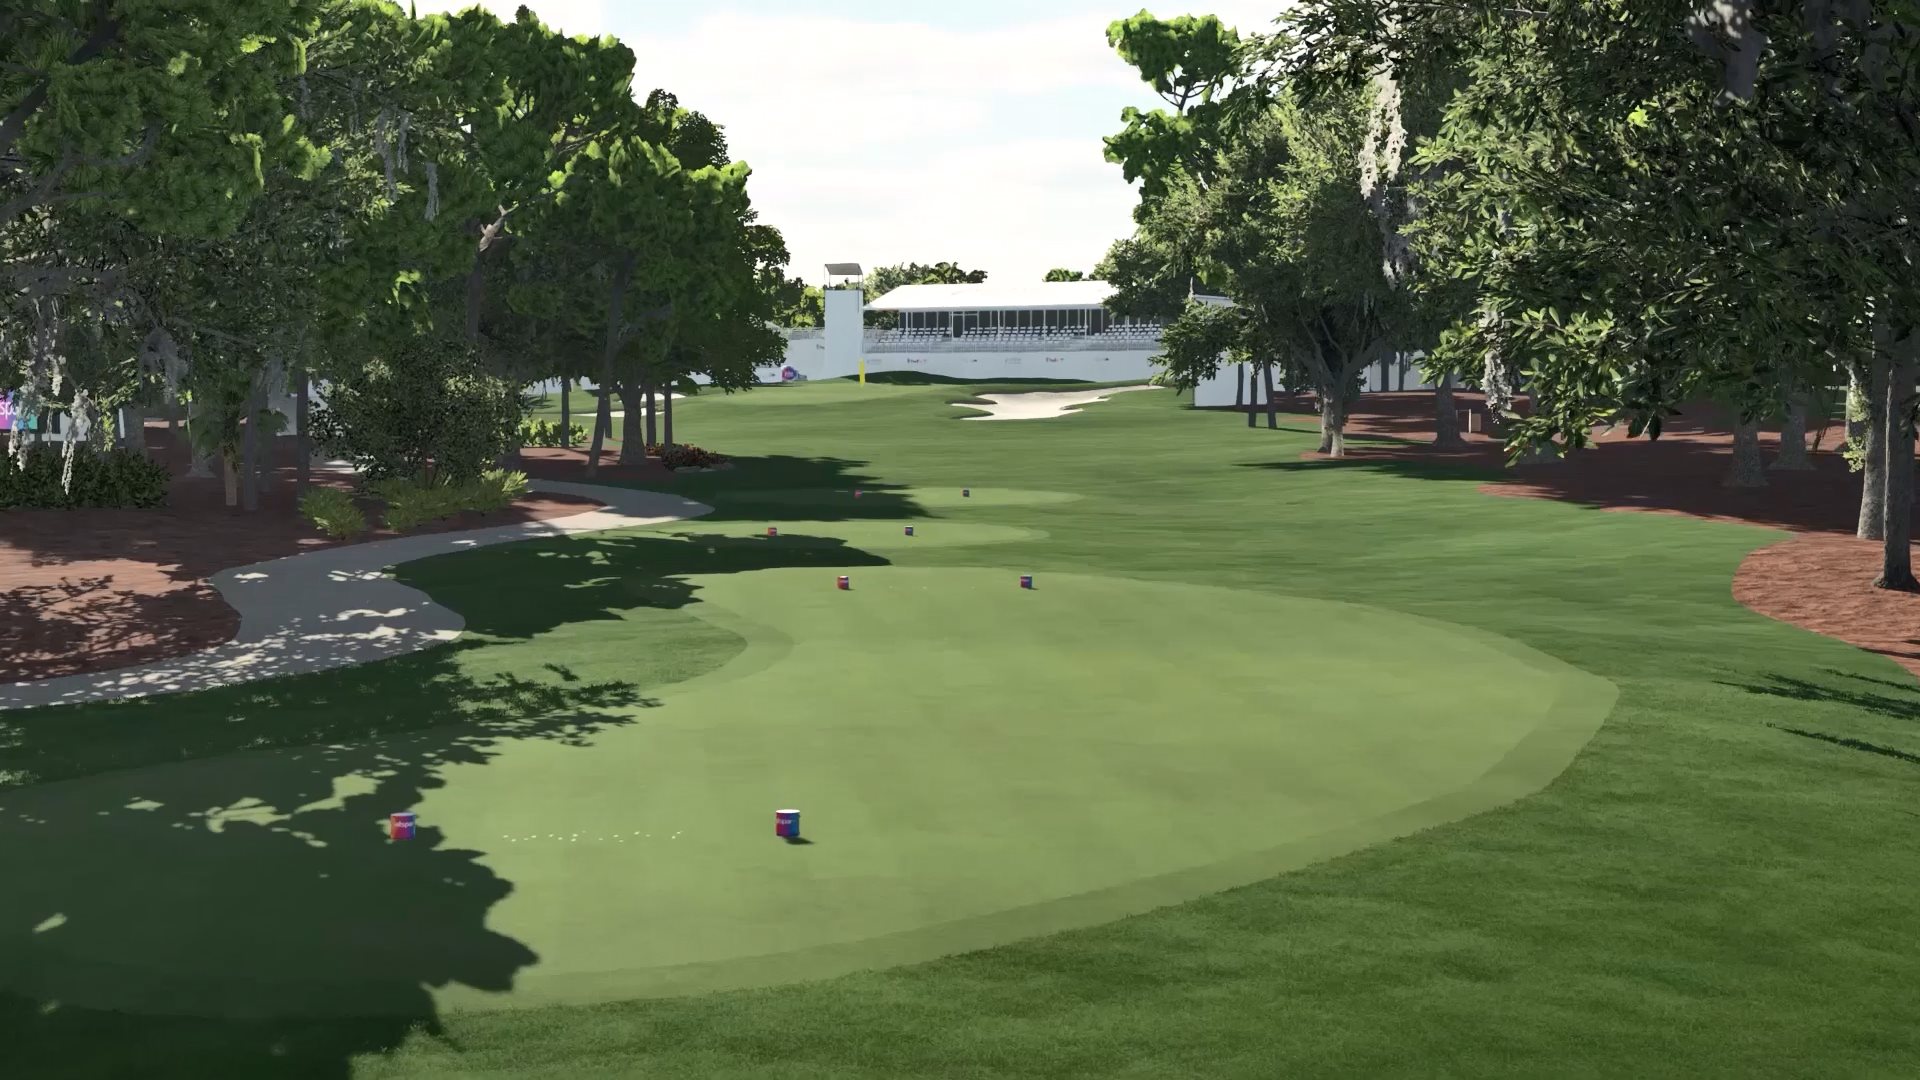 革命性绘图技术让《PGA巡回赛2K21》中的TPC球场无比真实